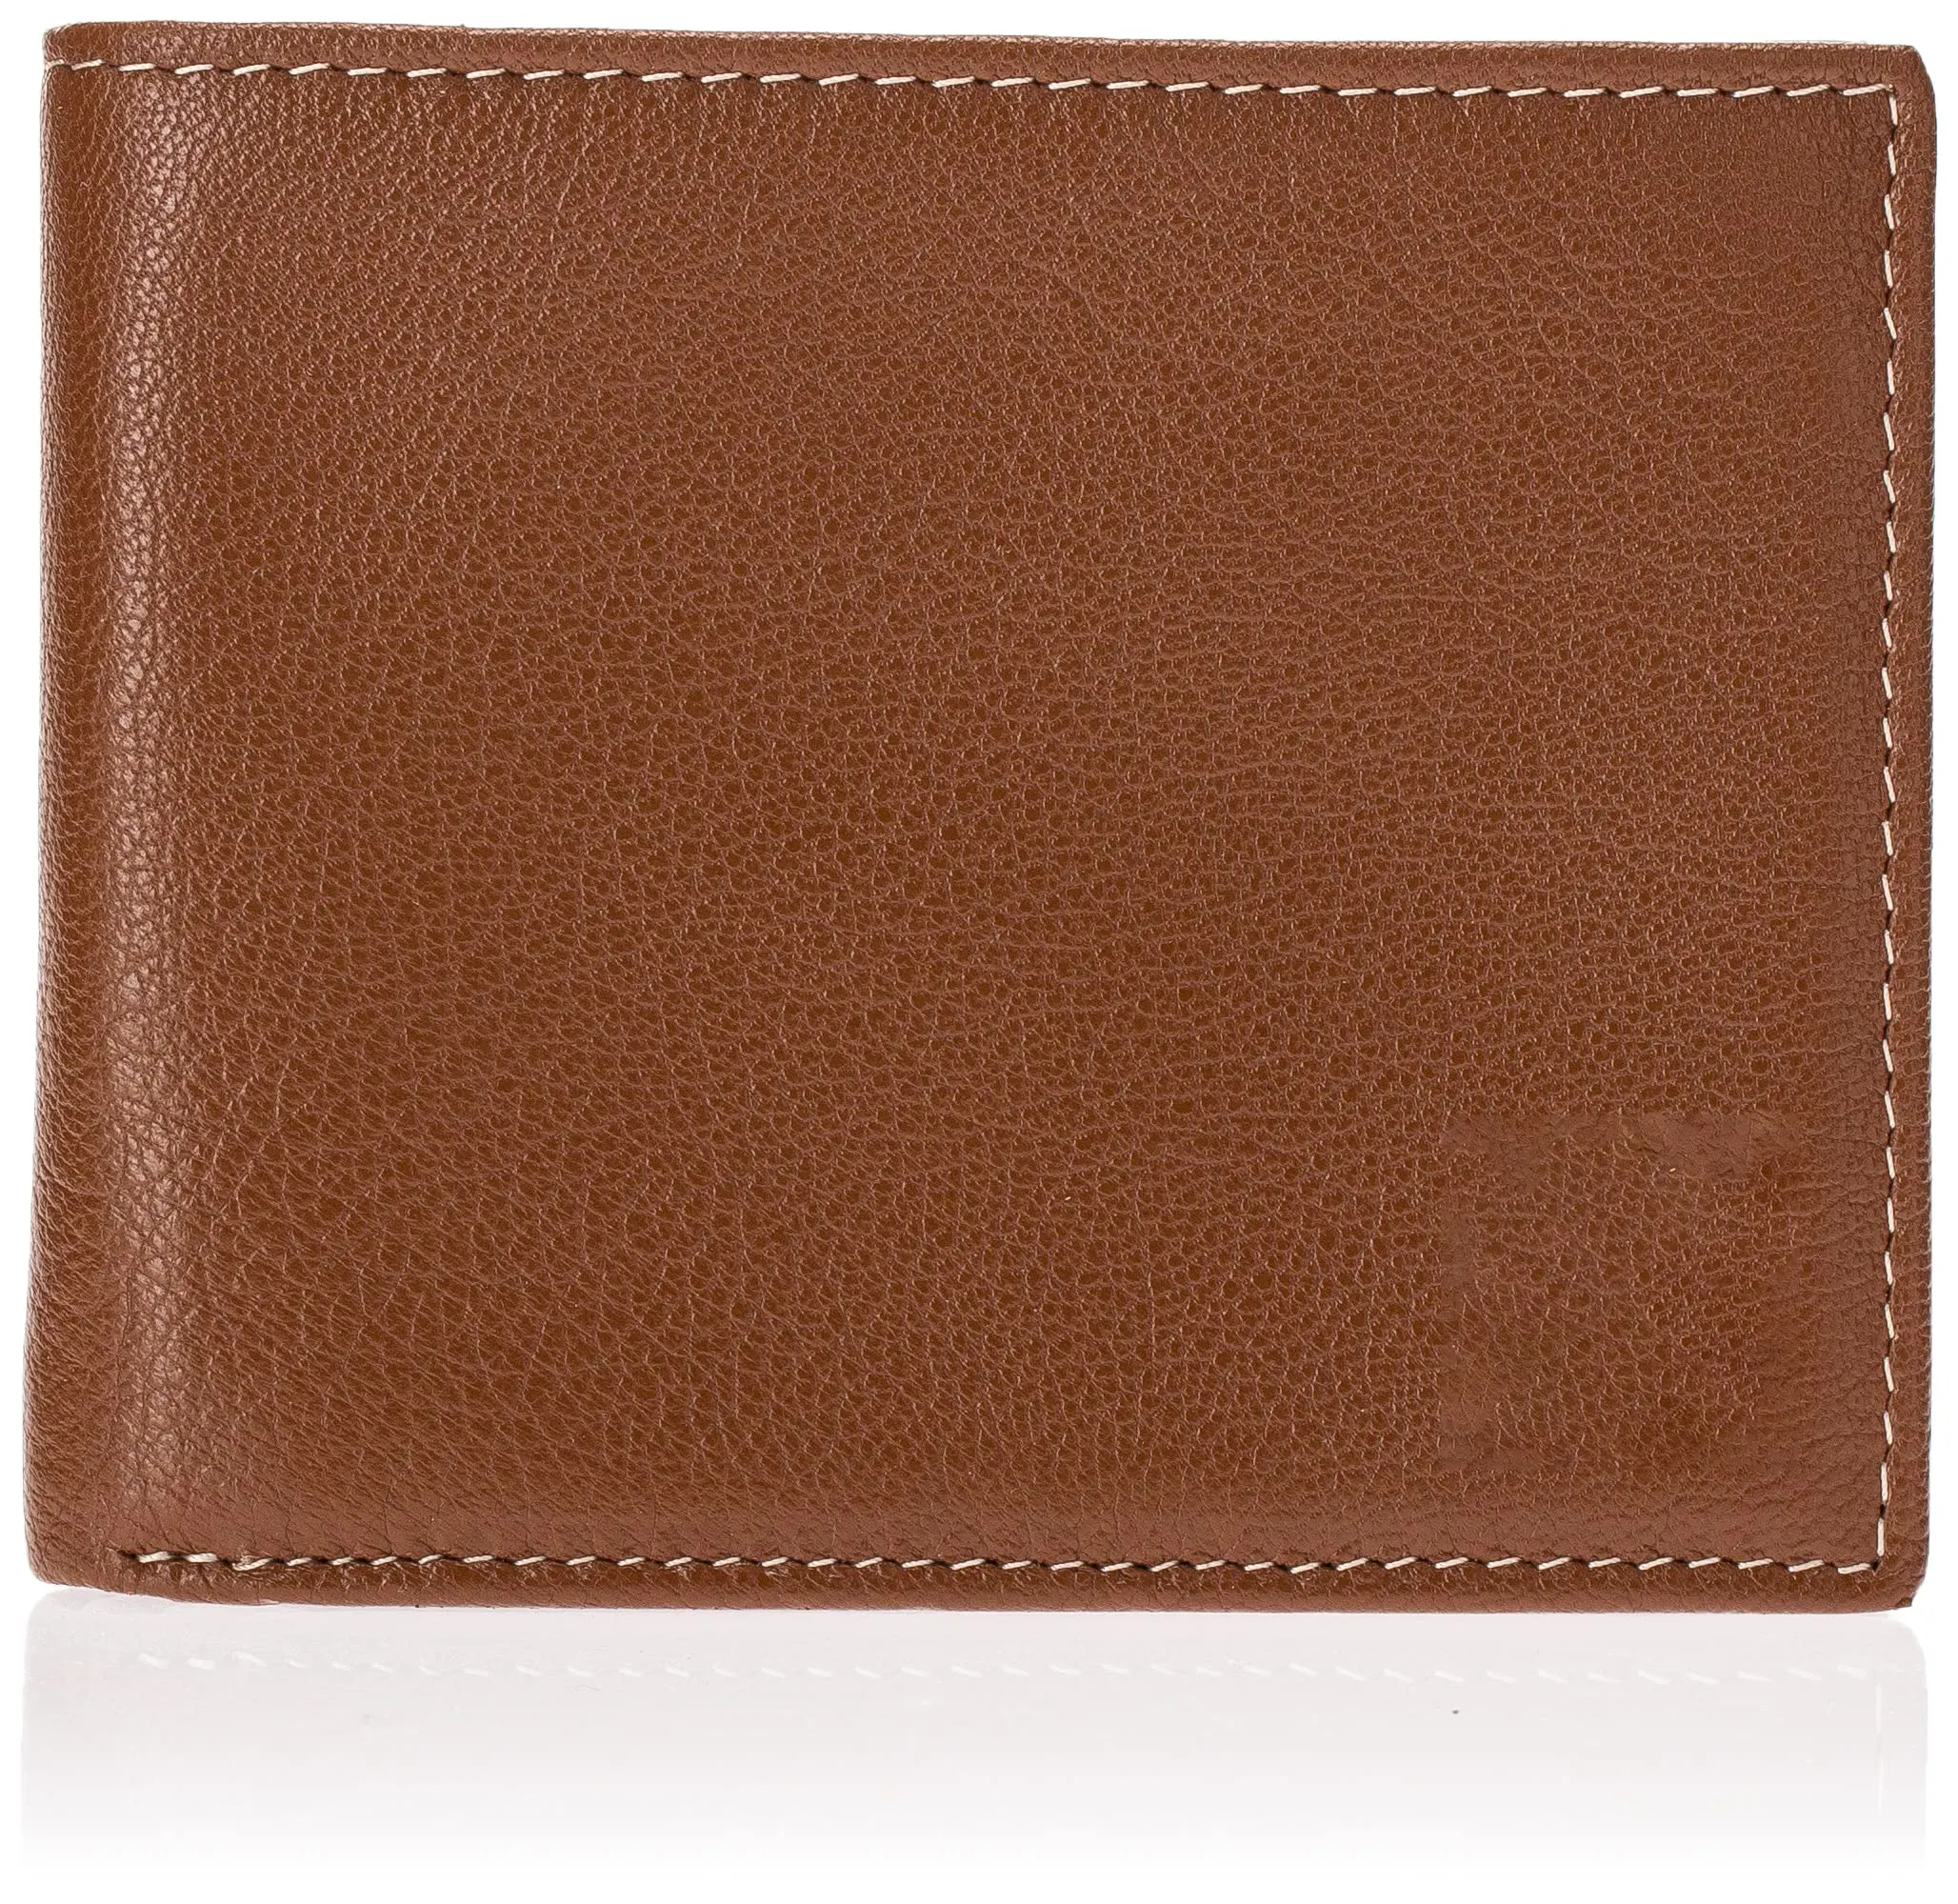 Пользовательский легкий и портативный Прикрепленный флип карман tan мужской кошелек из натуральной кожи